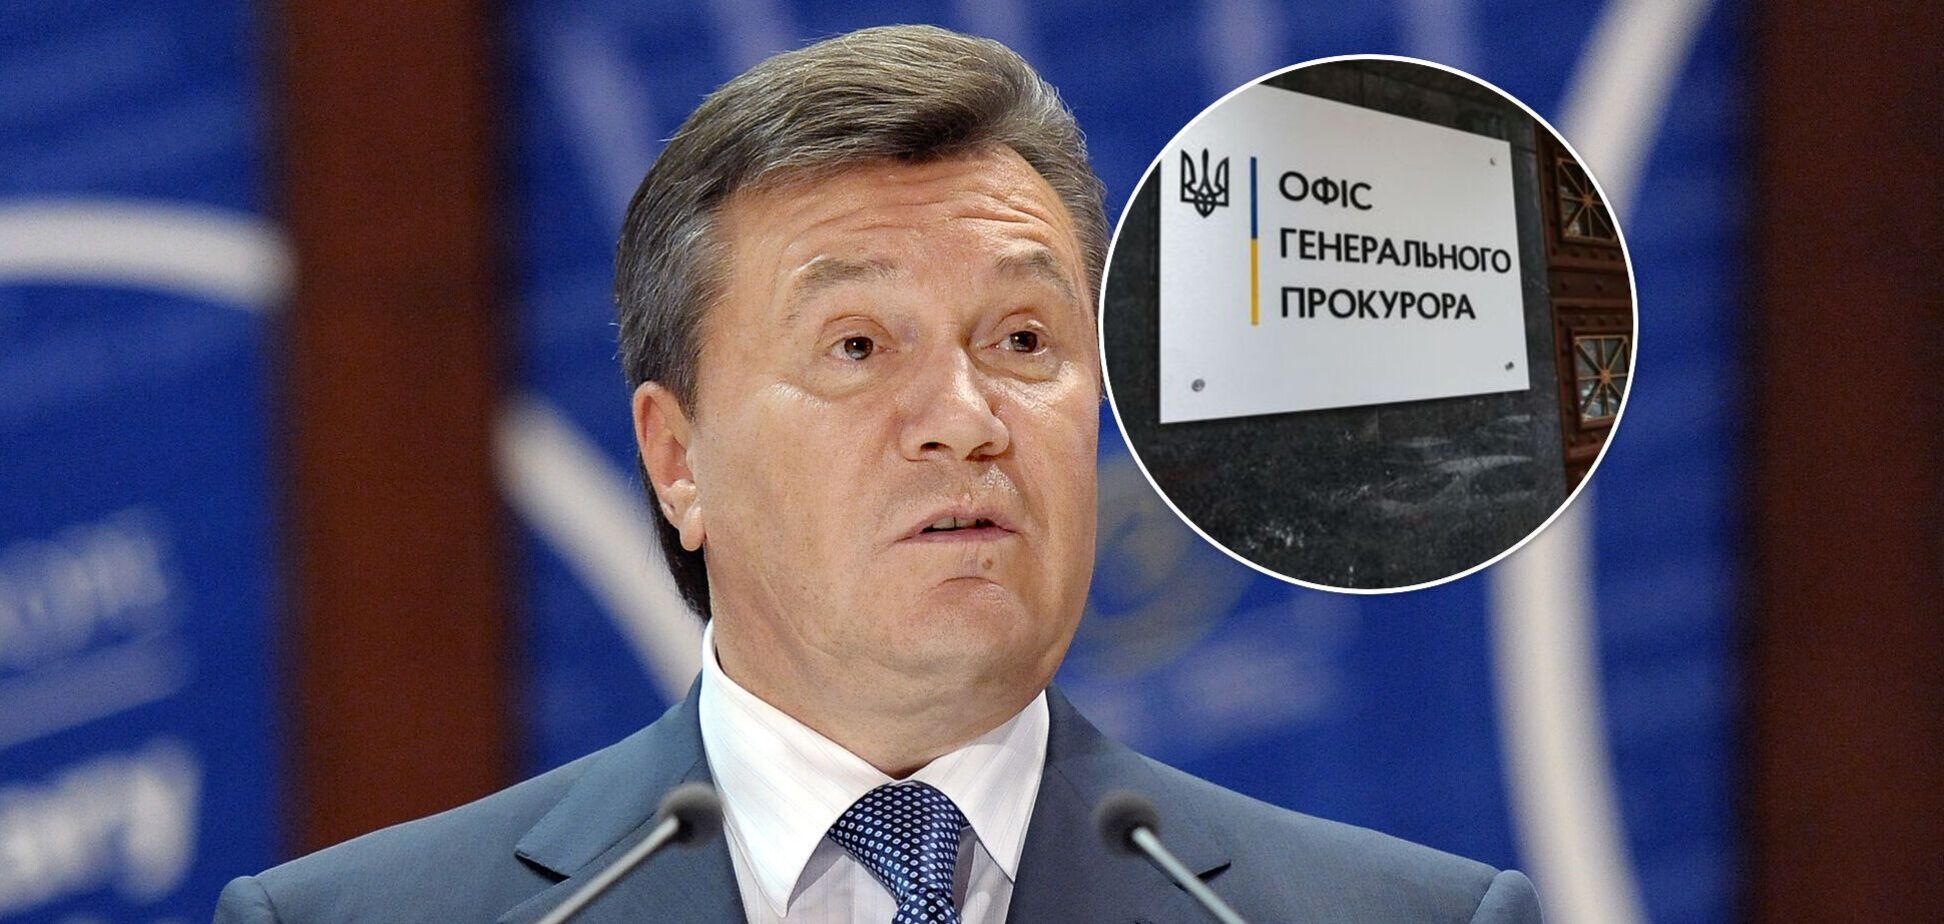 Суд разрешил спецрасследование по Януковичу из-за захвата власти